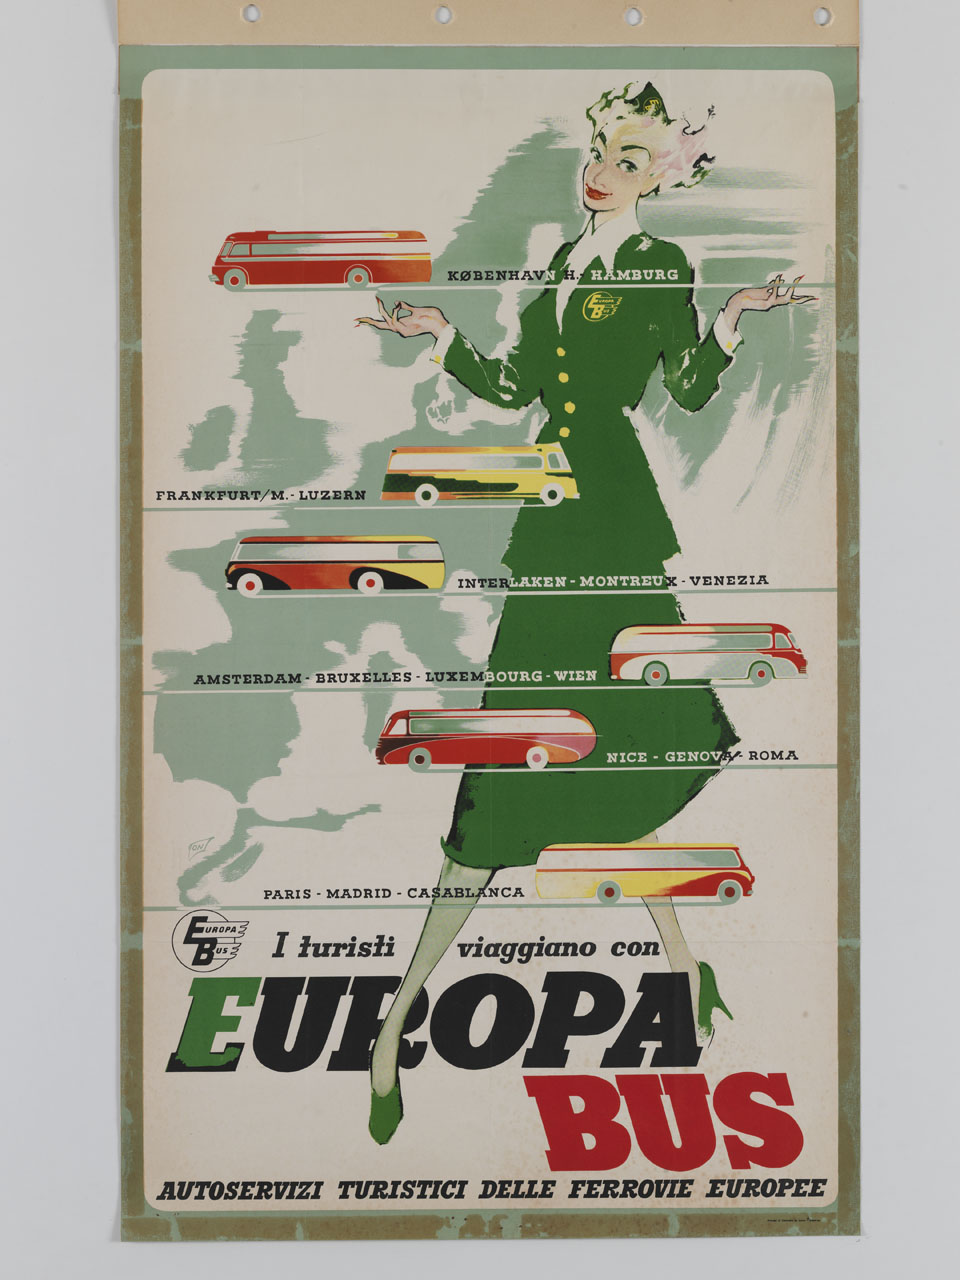 hostess mostra i pullman che sfrecciano tra le varie destinazioni europee (manifesto) - ambito danese (sec. XX)